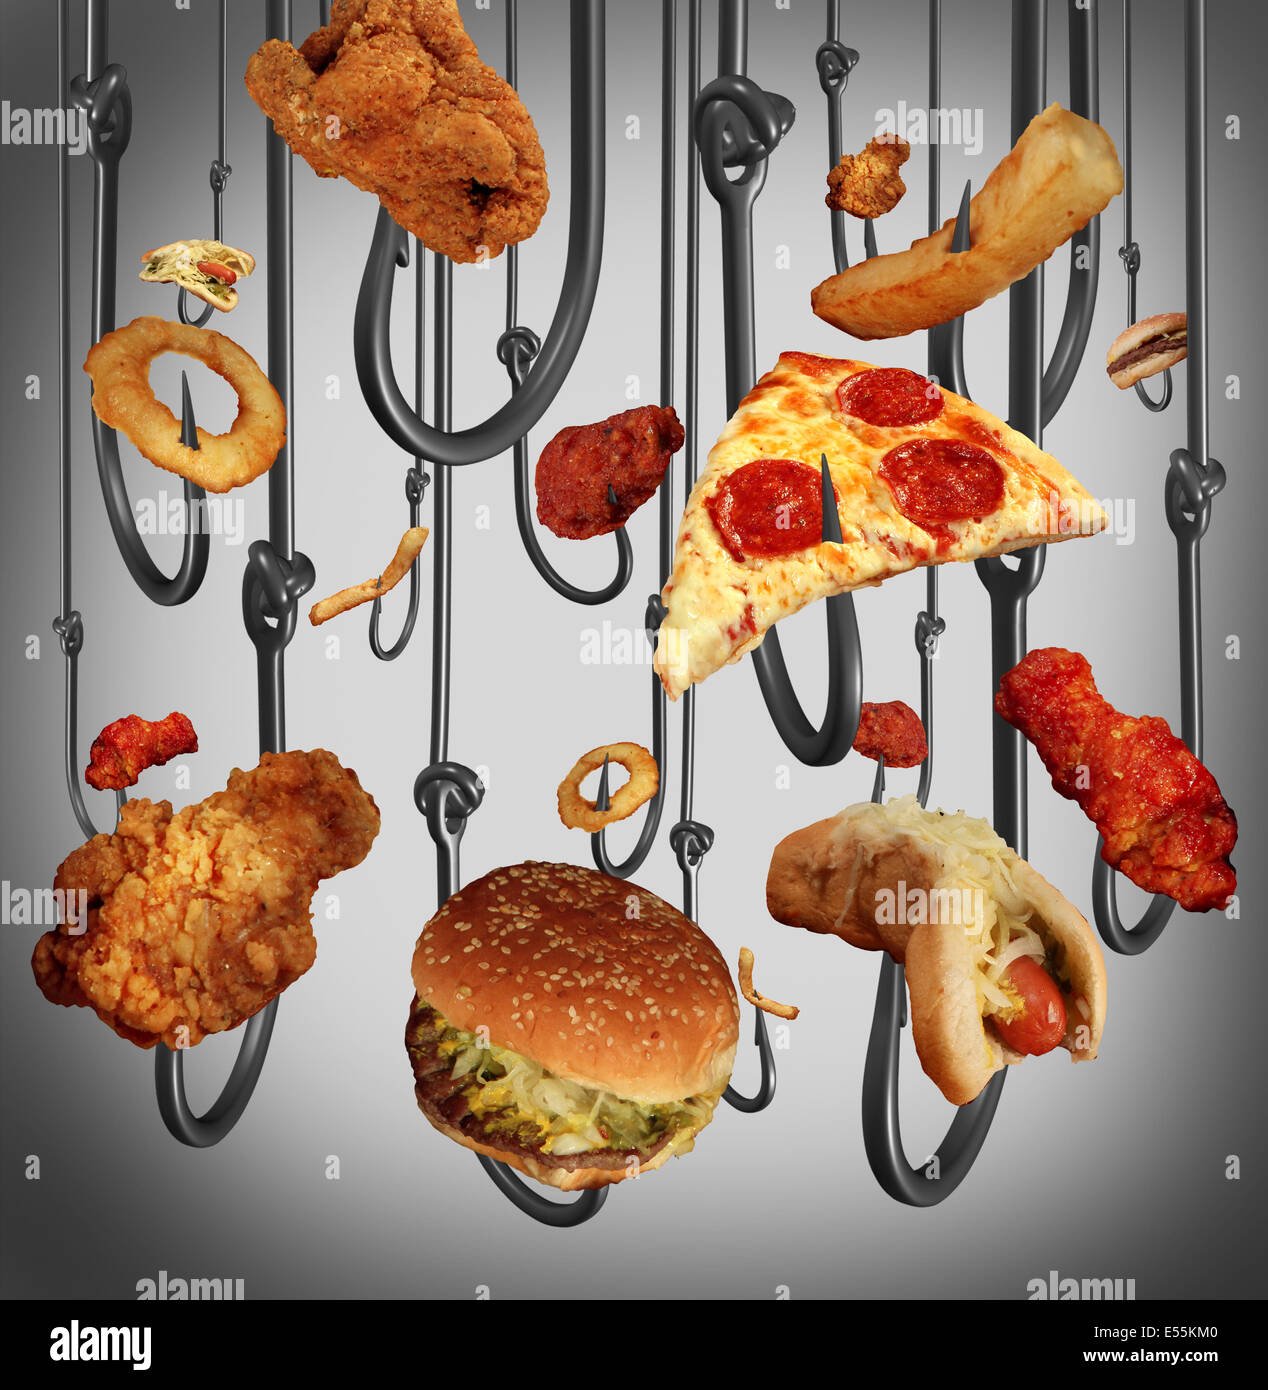 Sucht Gesundheits Konzept Essen Mit Einer Gruppe Von Metall Angelhaken Mit Fast Food Als Menschliche Koder Als Brathahnchen Hamburger Stockfotografie Alamy